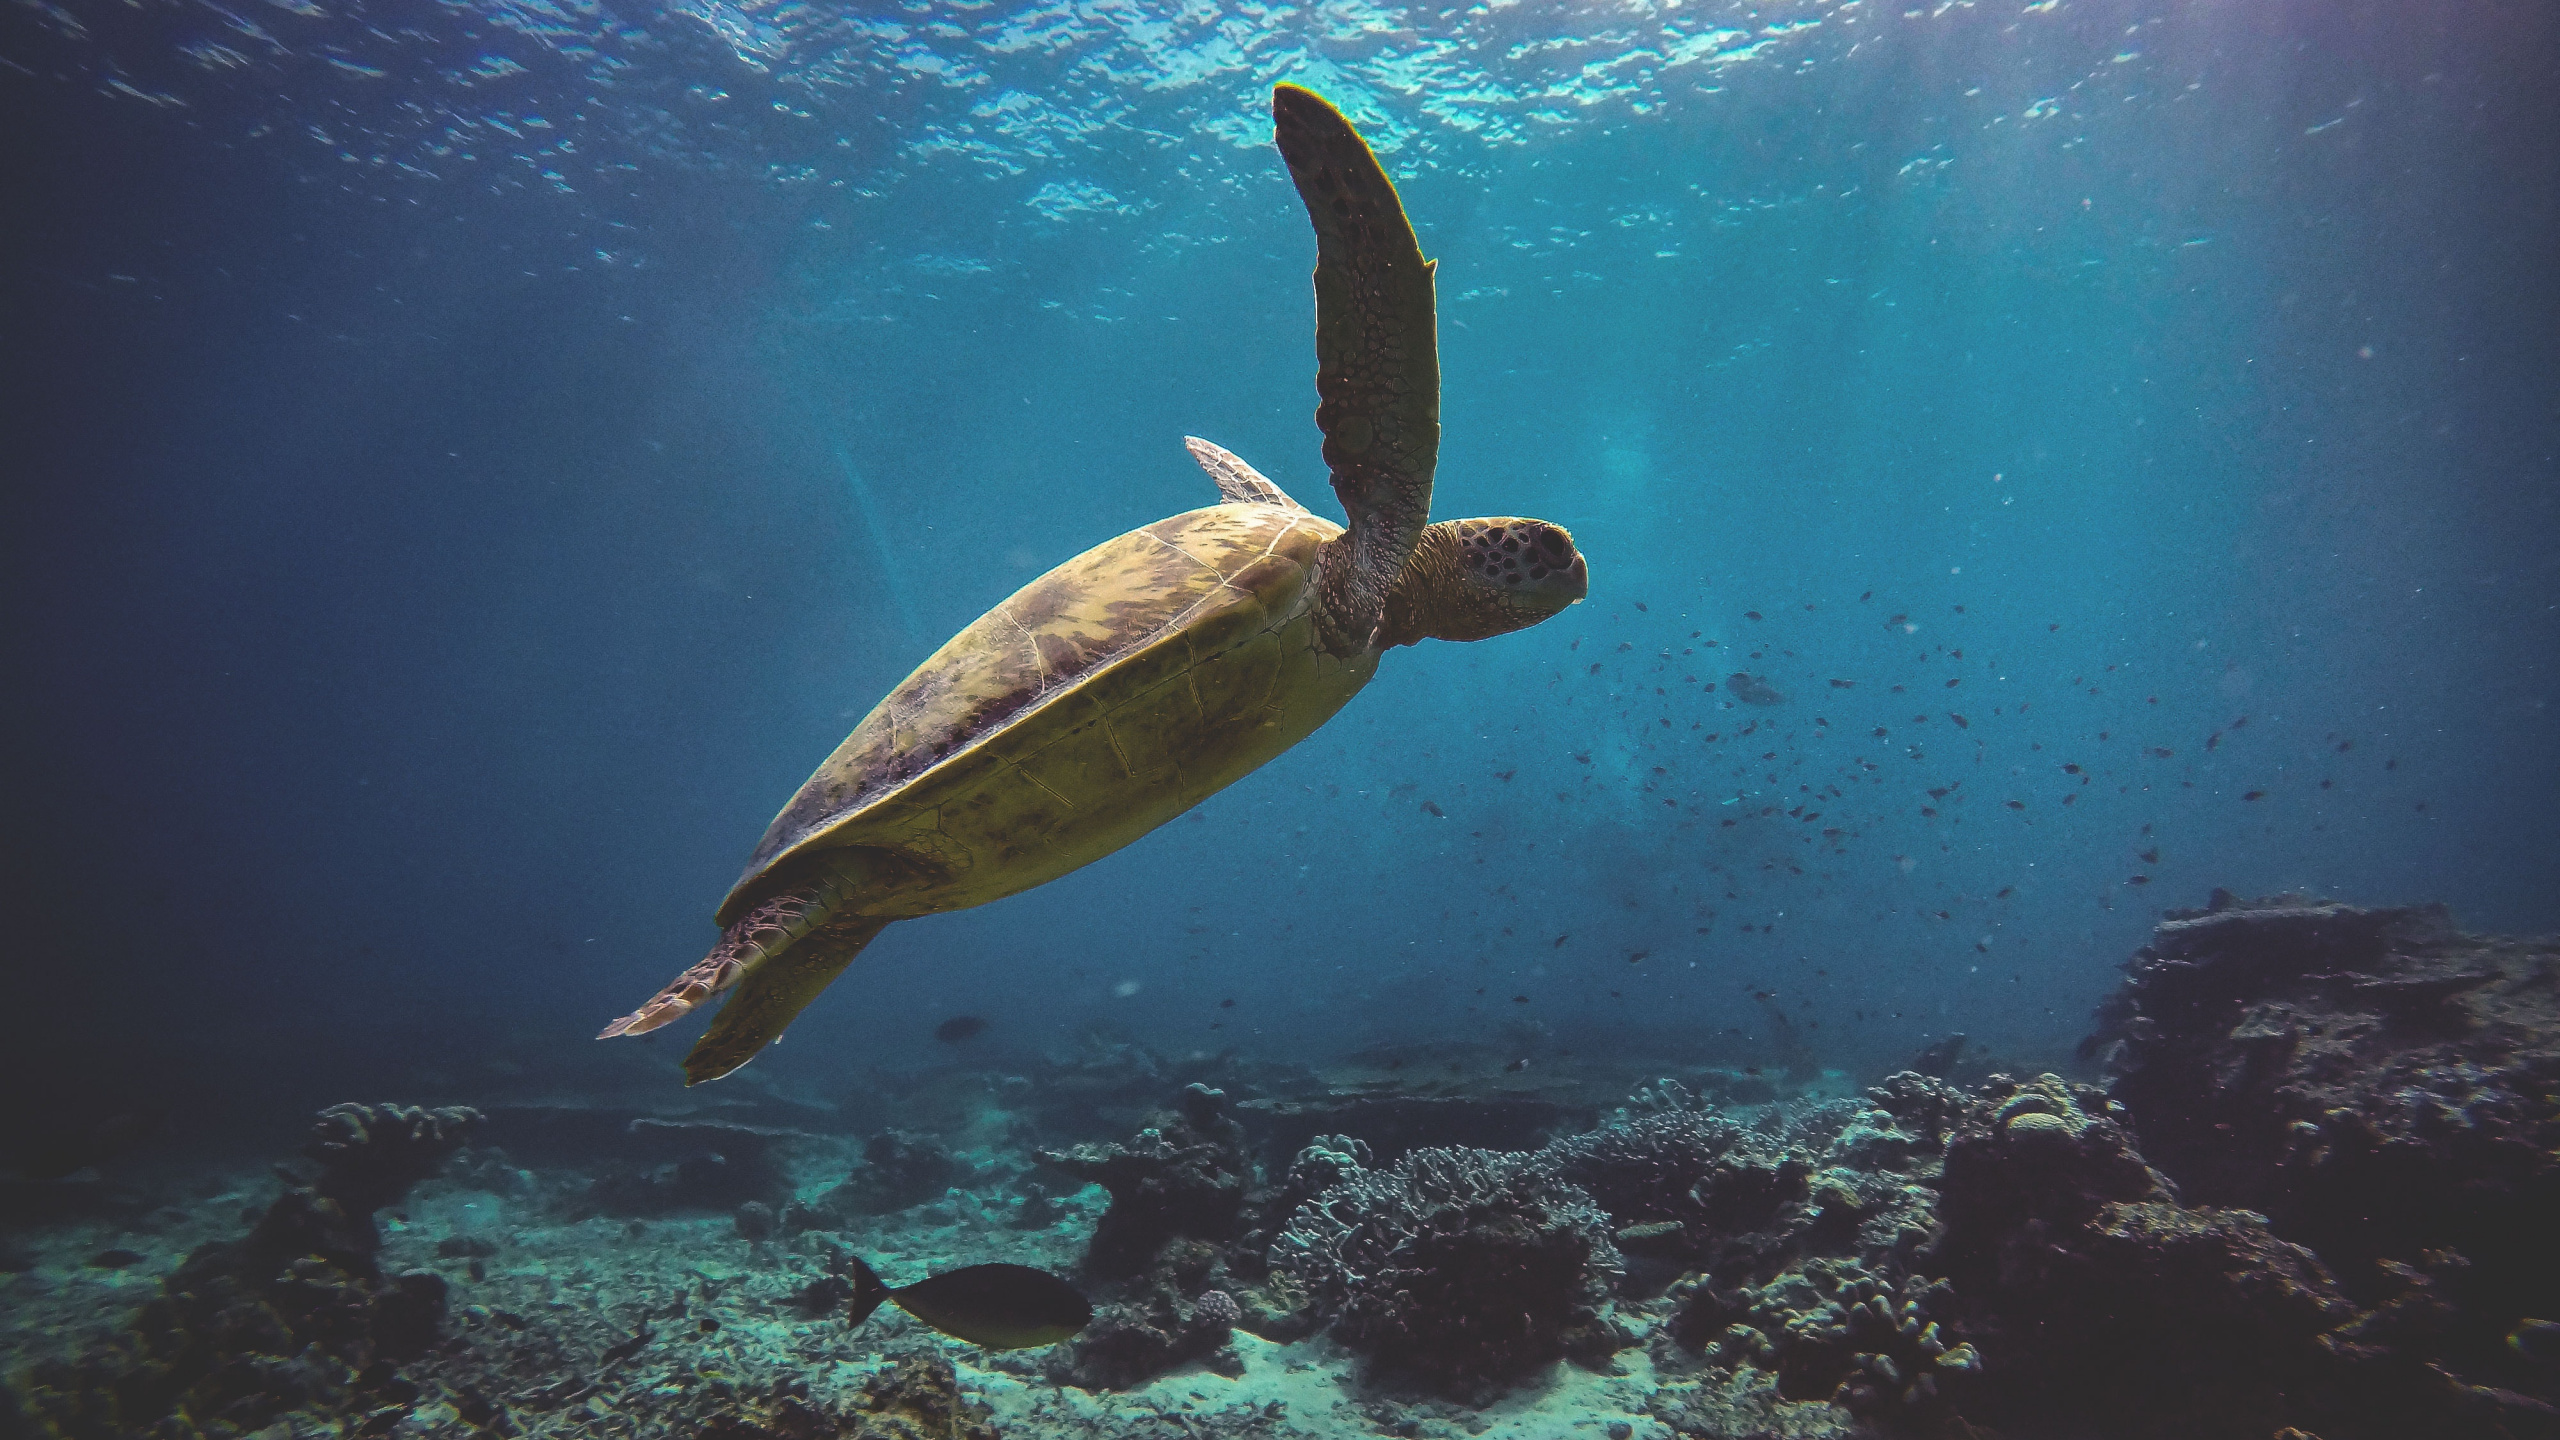 乌龟, S海龟, 水下, 海洋生物学 壁纸 2560x1440 允许